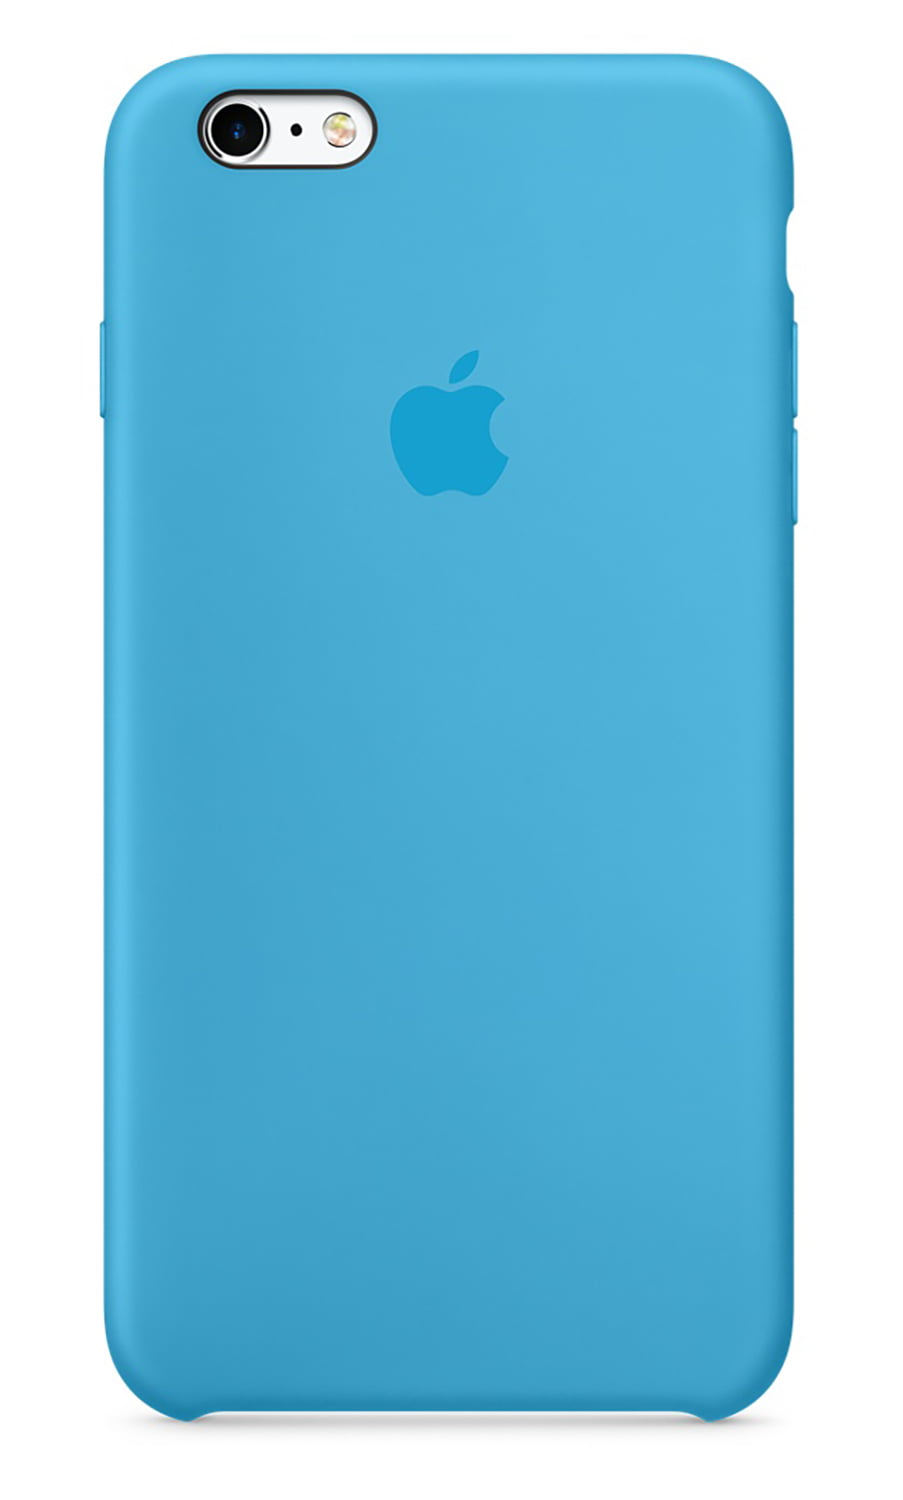 Stout ontsnappen motief Apple iPhone 6 Plus/6s Plus Silicone Case - Blue - Walmart.com